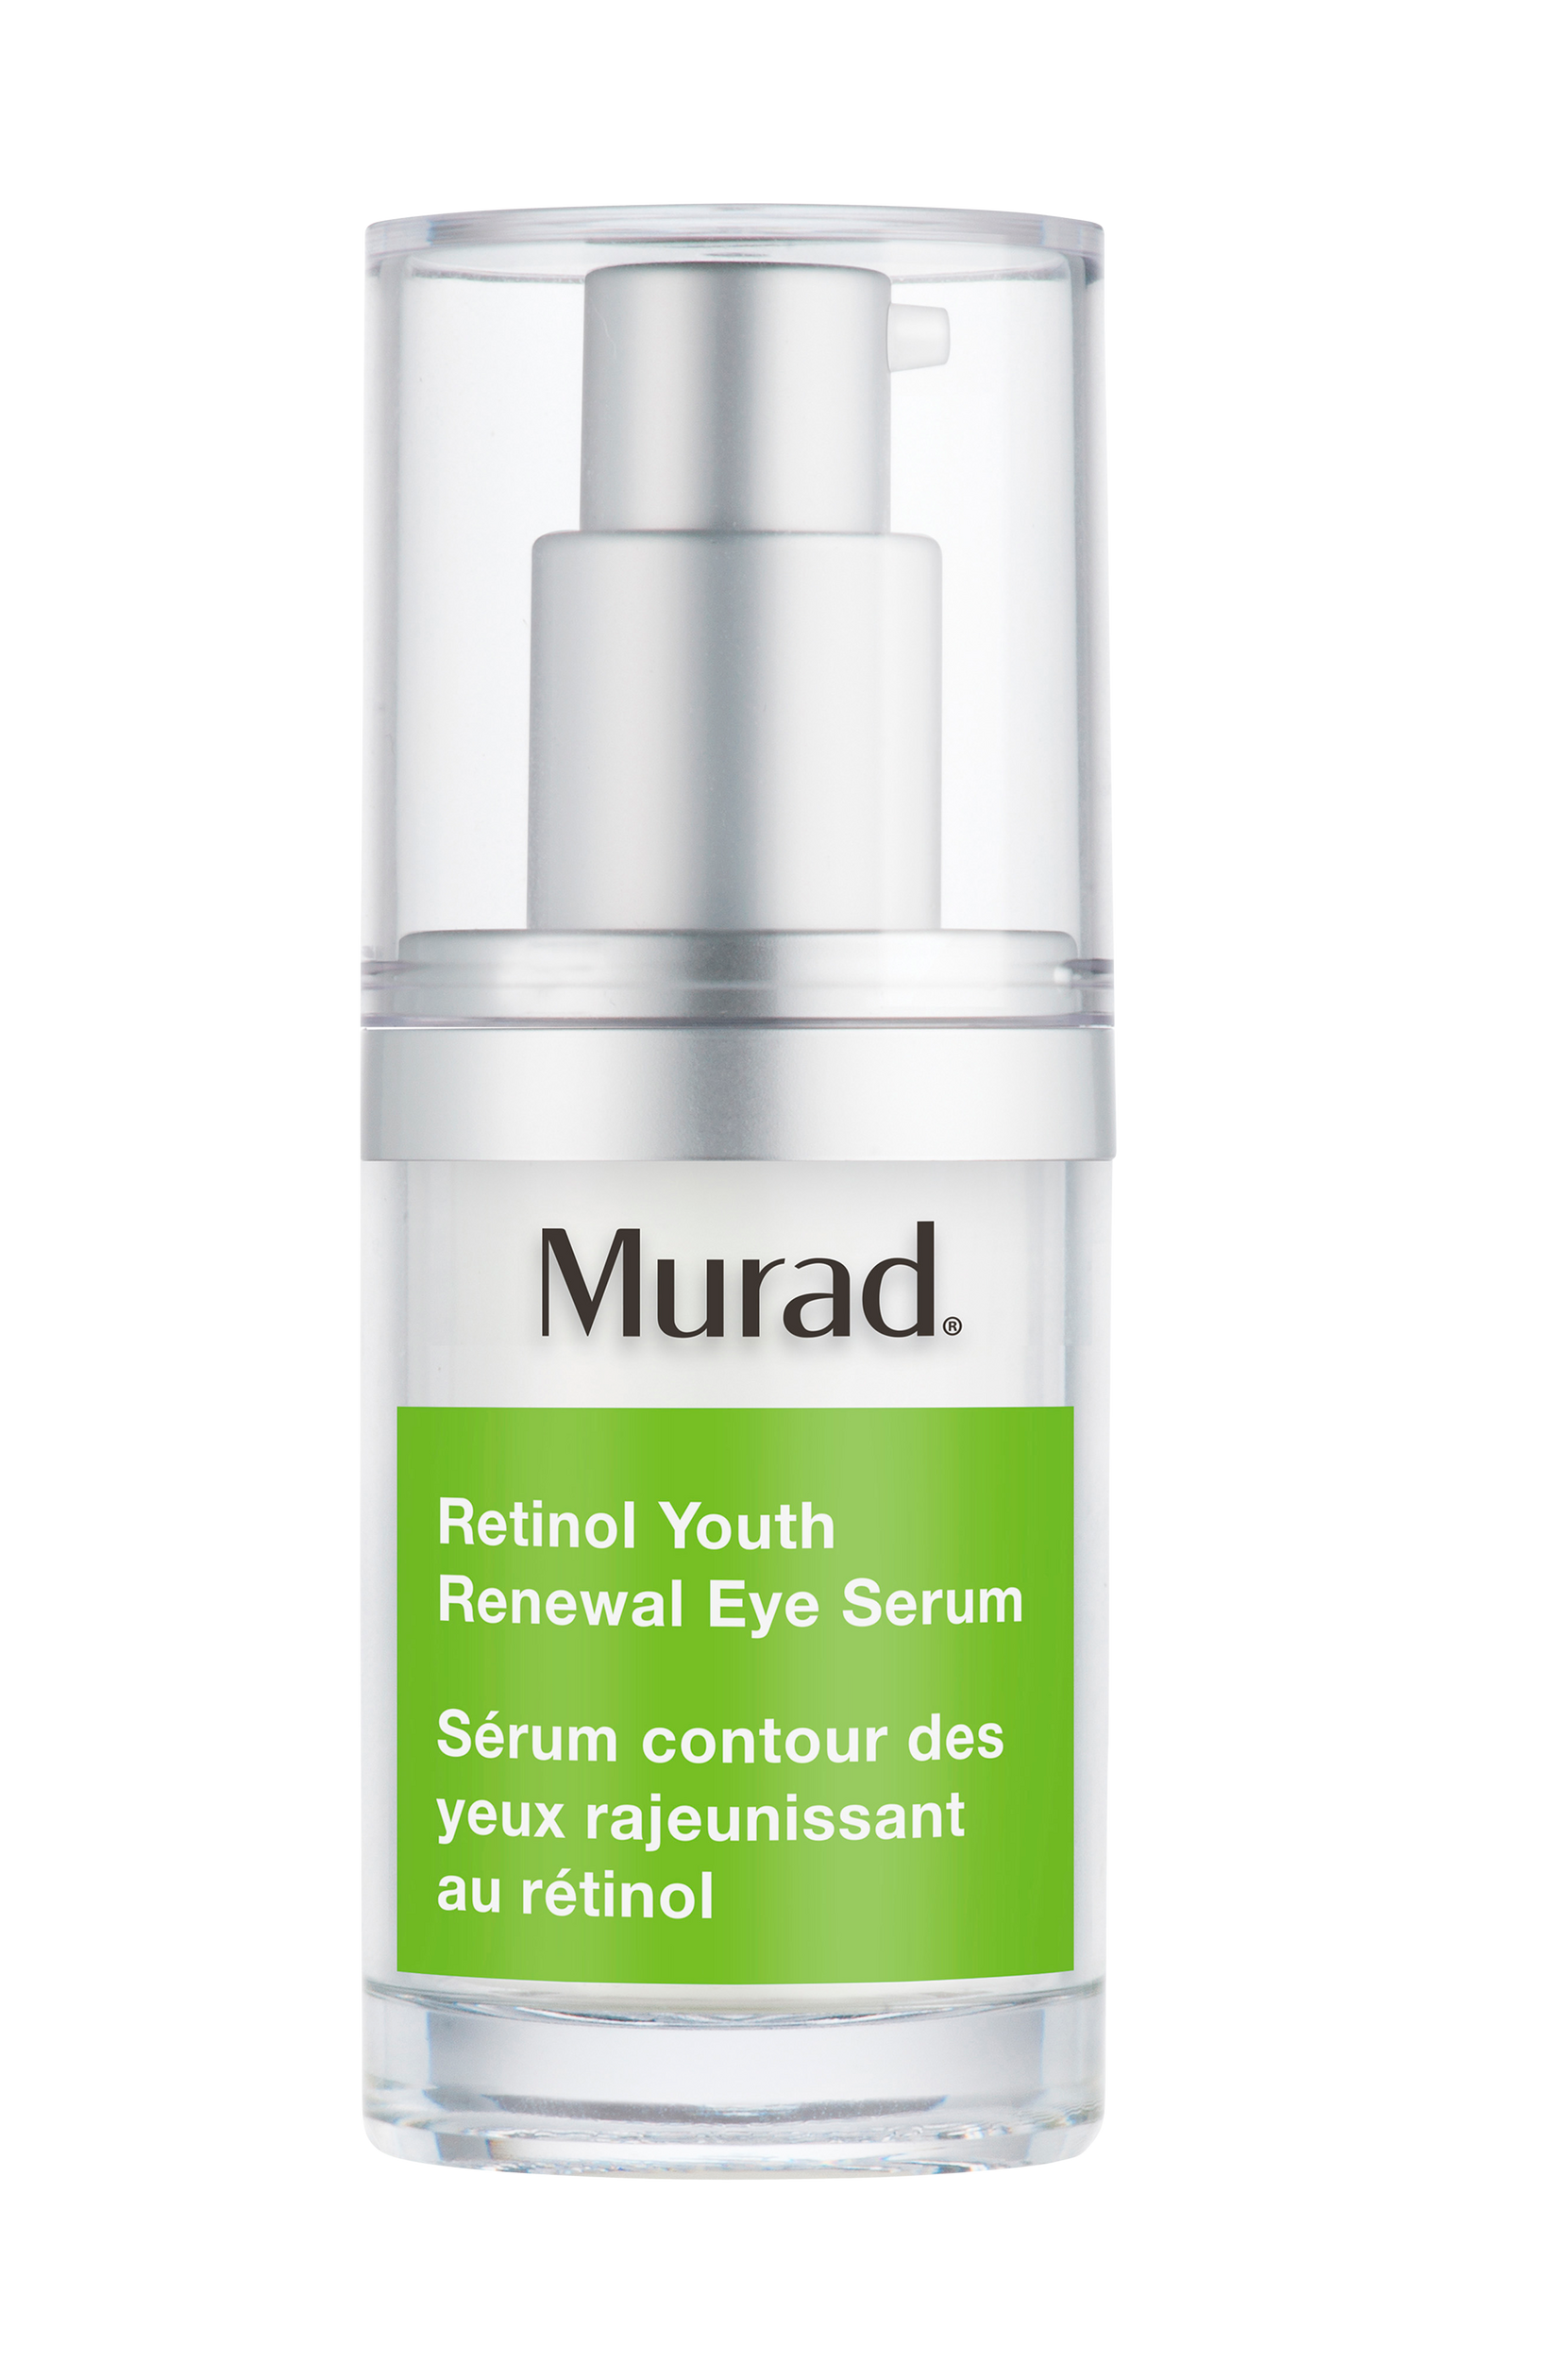 Retinol Youth Renewal Eye Serum 150 ml, Murad